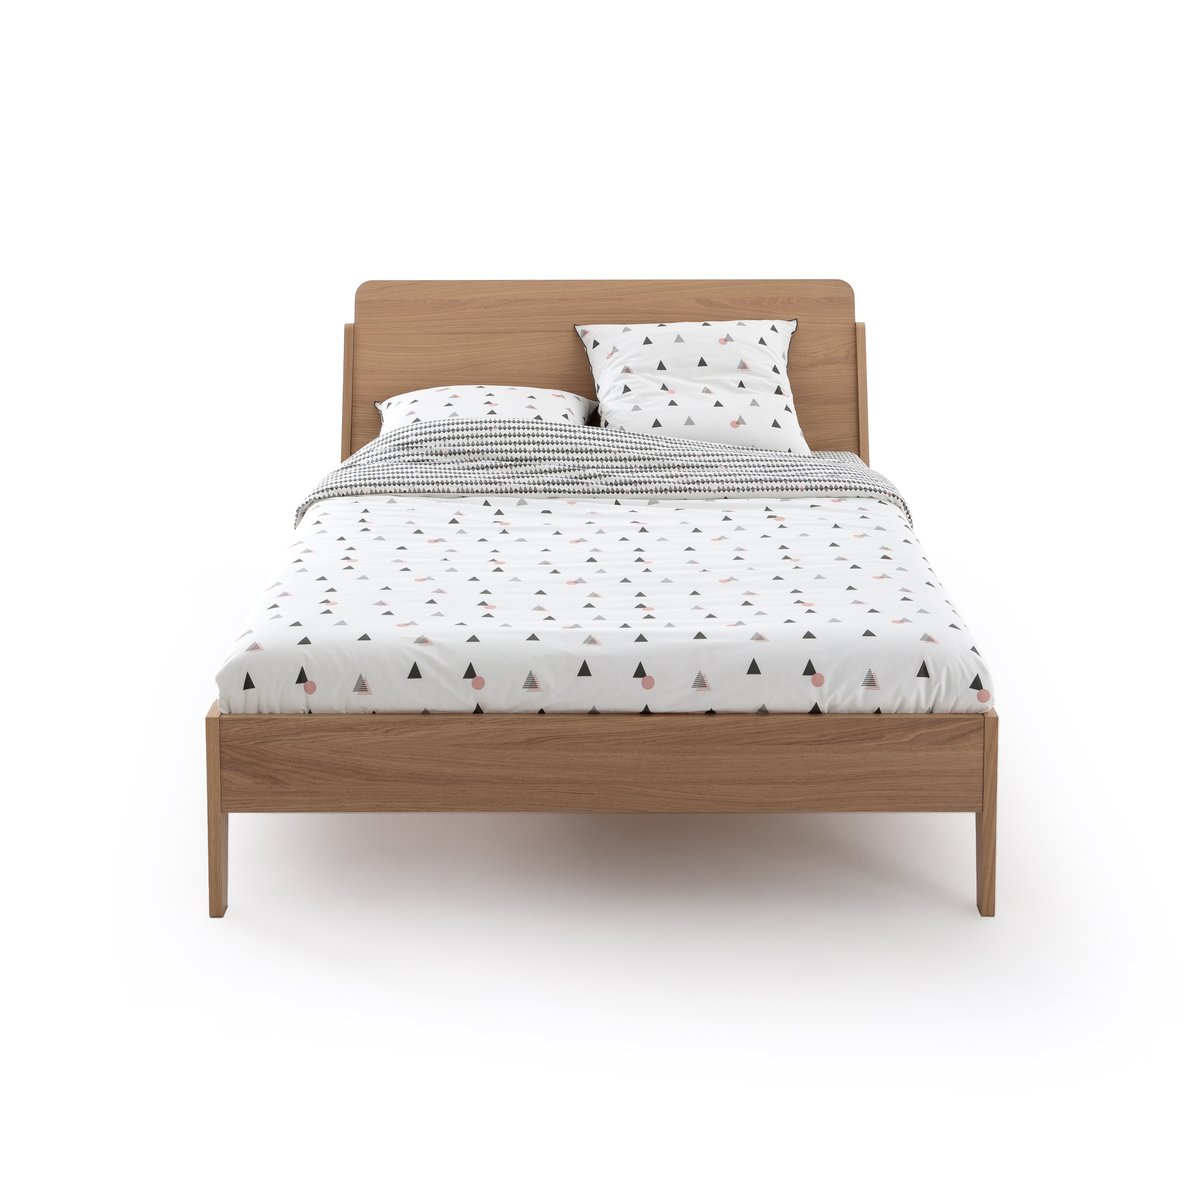 Кровать La Redoute DOUV 140 x 190 см каштановый, размер 140 x 190 см - фото 2